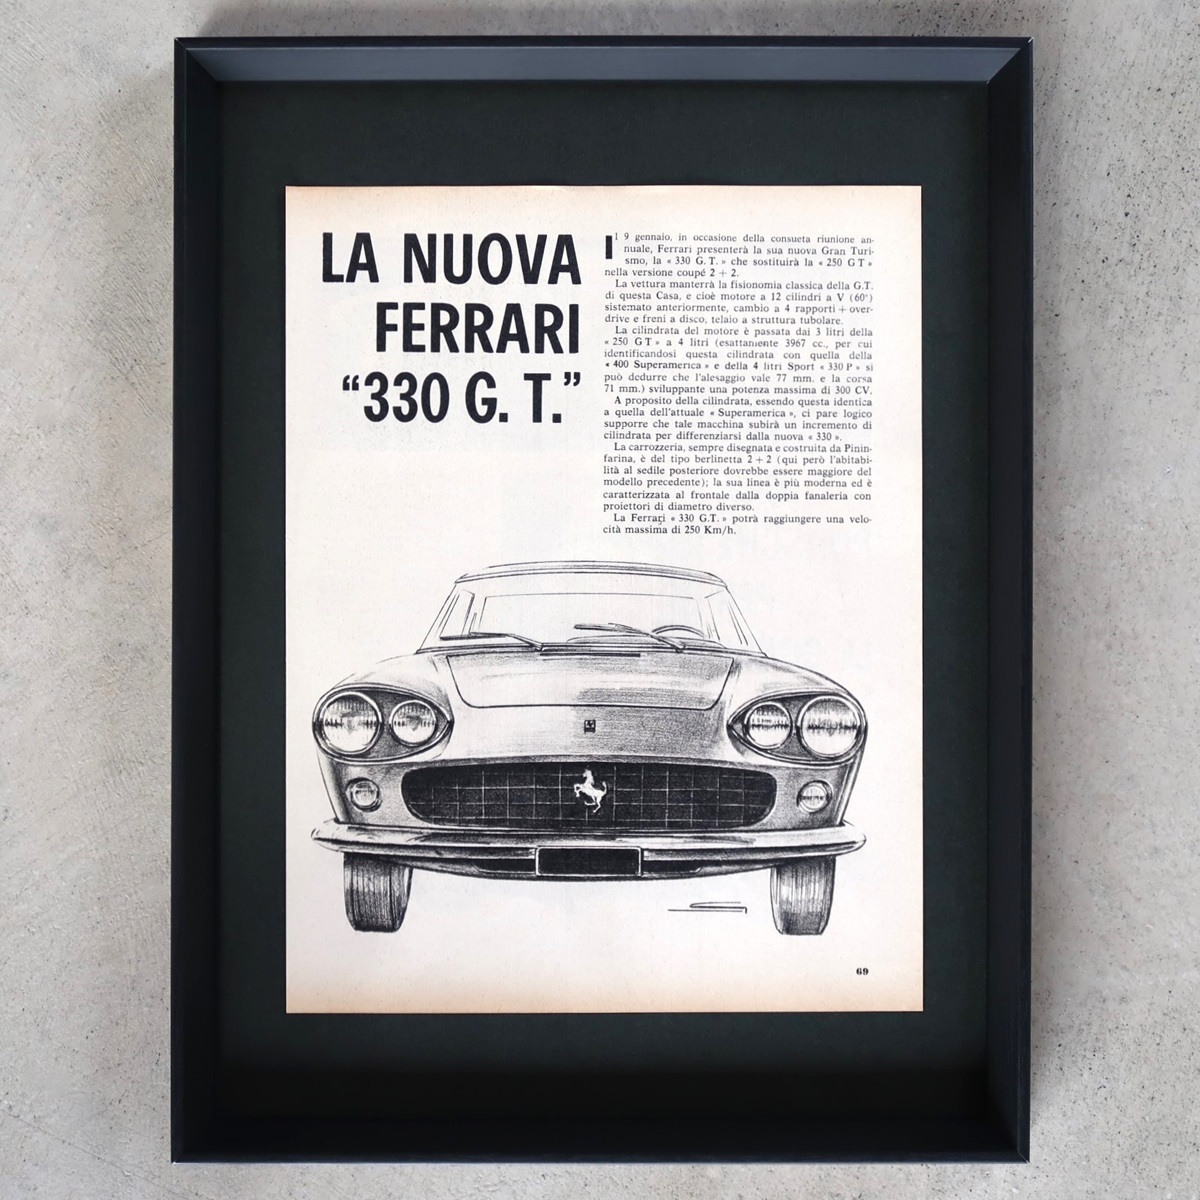 Ferrari フェラーリ 1964年 Ferrari 330 GT イラスト イタリア ヴィンテージ 広告 額装品 レア コレクション インテリア ポスター 稀少_画像1